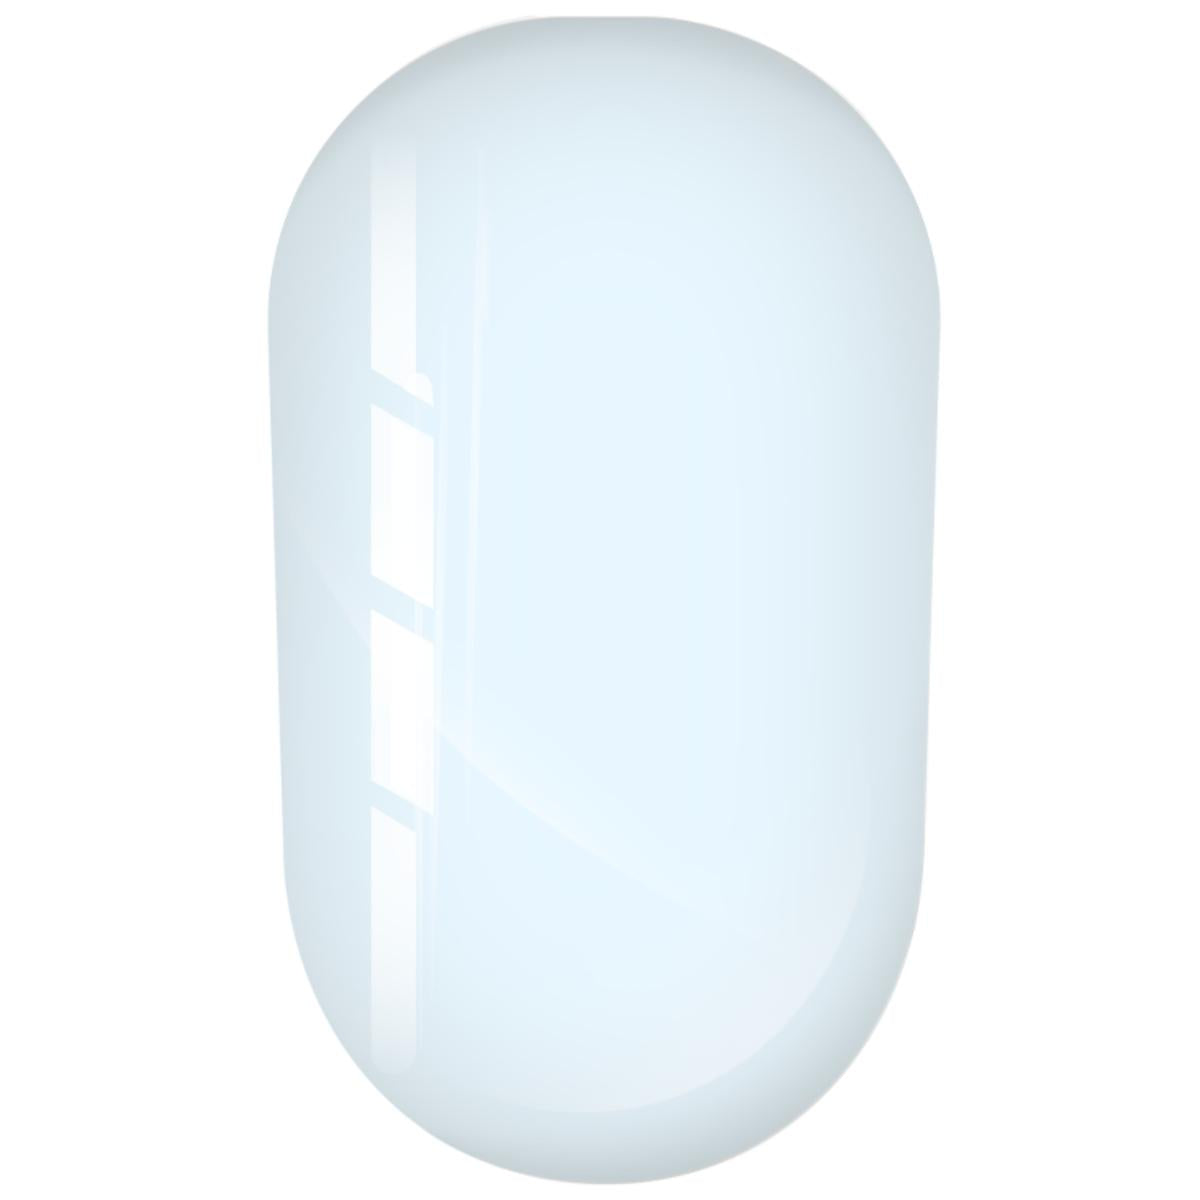 Fiber Base Dew Drop Trendy Nails base semipermanente autmodellante con fibra di vetro per ricostruzione unghie senza limatura. Massima adesione sulle unghie. Contiene Calcio e Vitamina E.